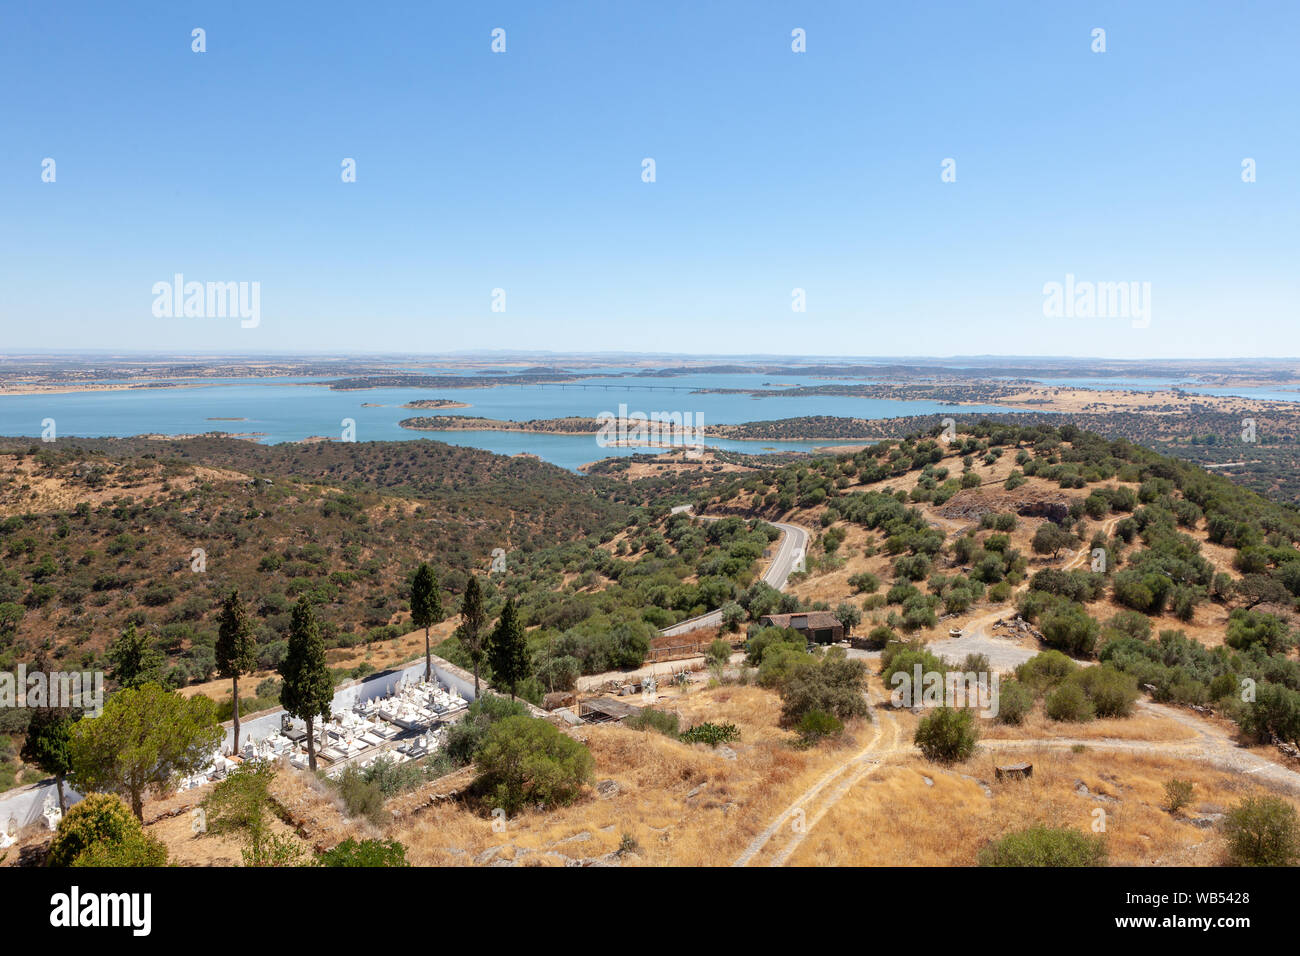 Una vista del Embalse del Alqueva, el lago artificial más grande de Europa, desde lo alto de la colina de Monsaraz en el Alentejo, Portugal Foto de stock